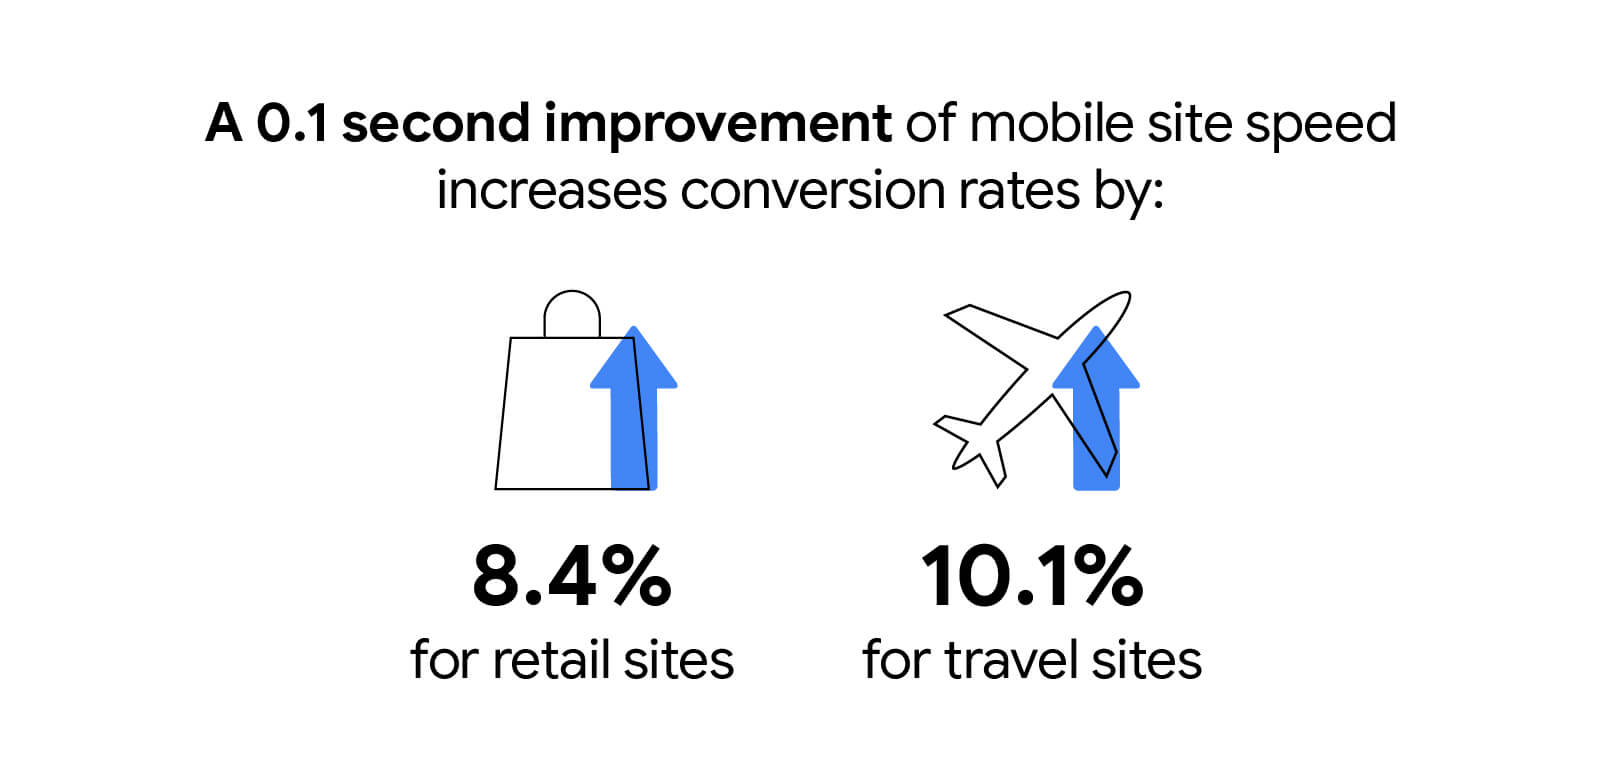 移动网站速度每提升 0.1 秒，零售网站的转化率就会提高 8.4%，旅游网站的转化率会提高 10.1%。